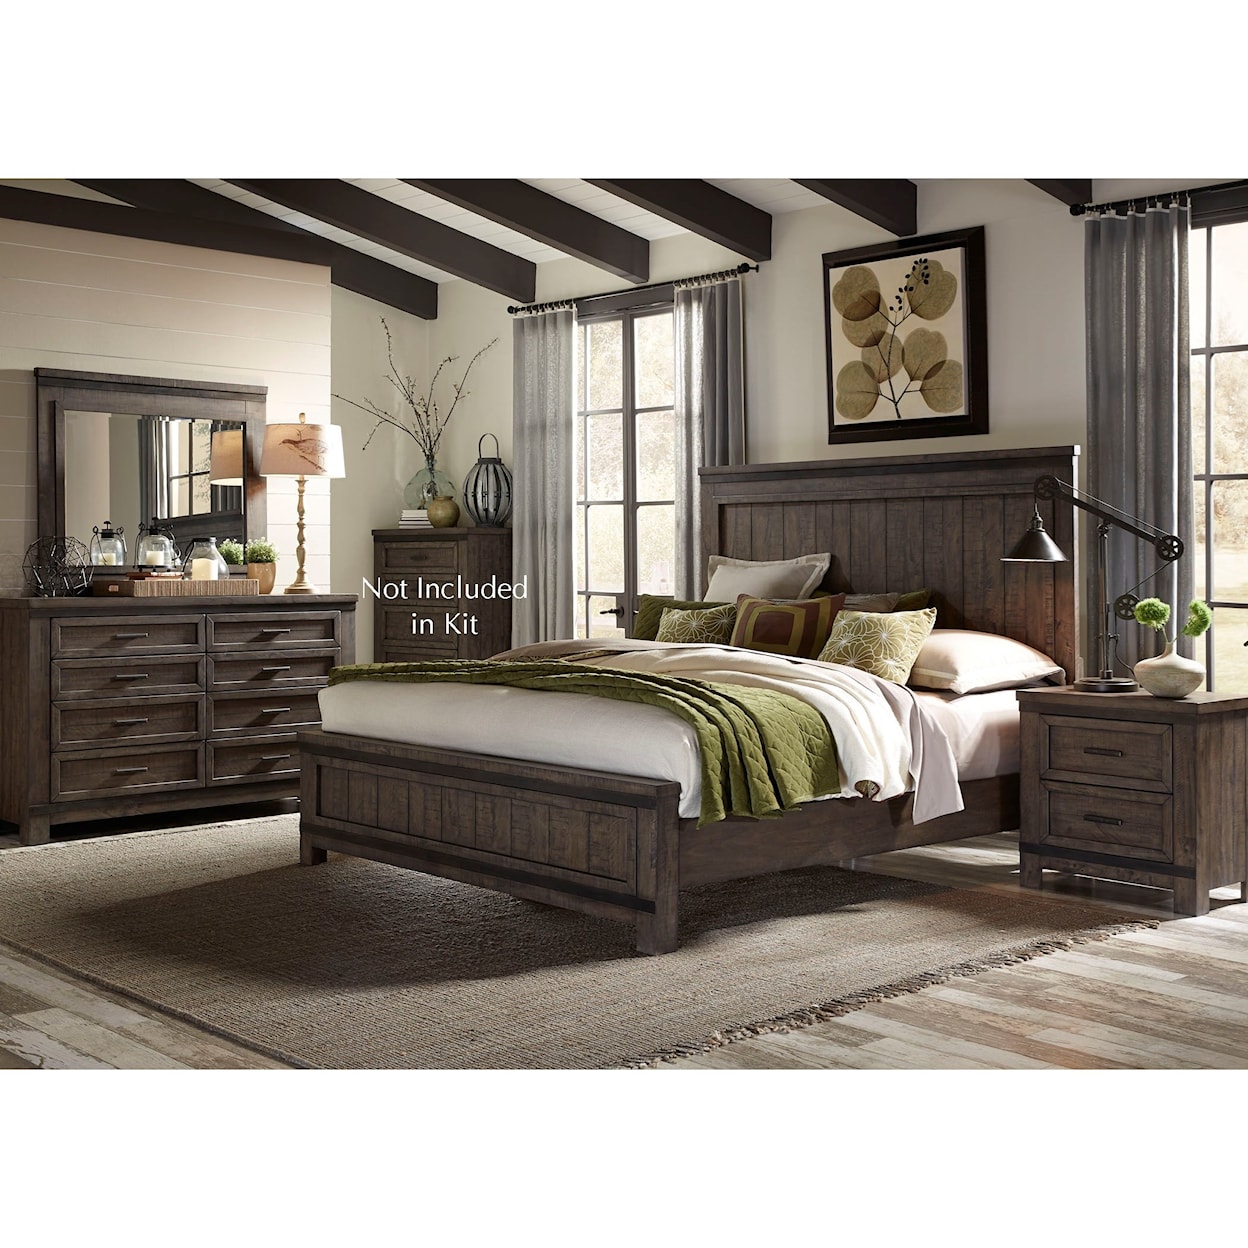 Liberty Furniture Thornwood Hills Queen Bedroom Group